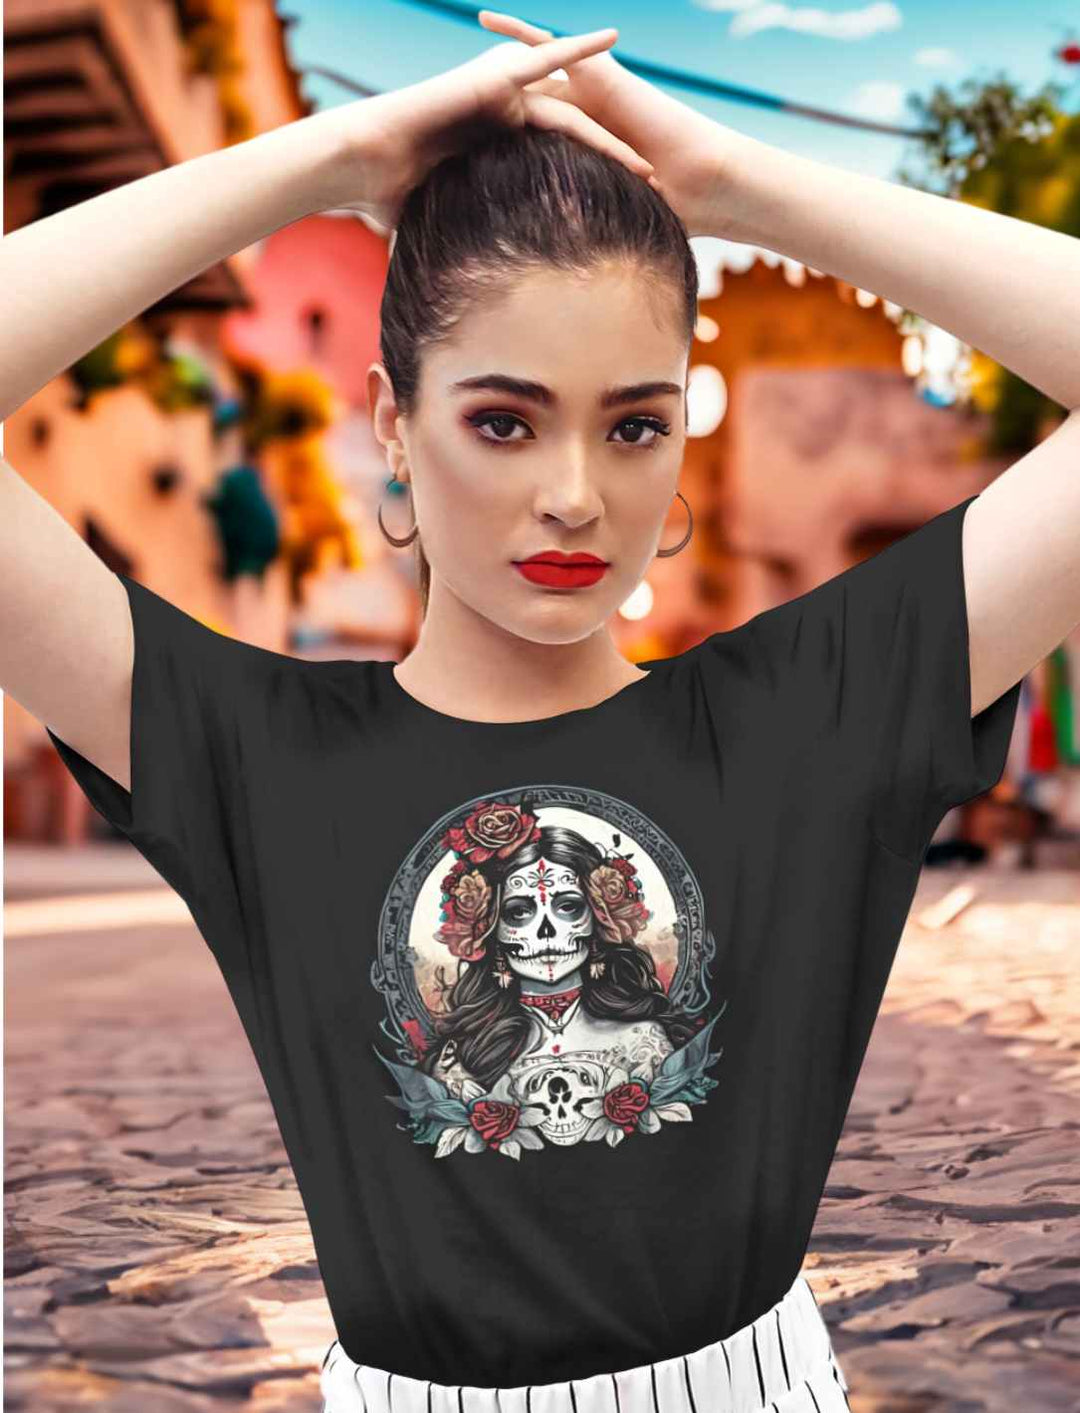 Junge Frau in Mexiko mit dem Unisex La Catrina Shirt in Schwarz, auf einer Straße während des Día de los Muertos – Runental.de